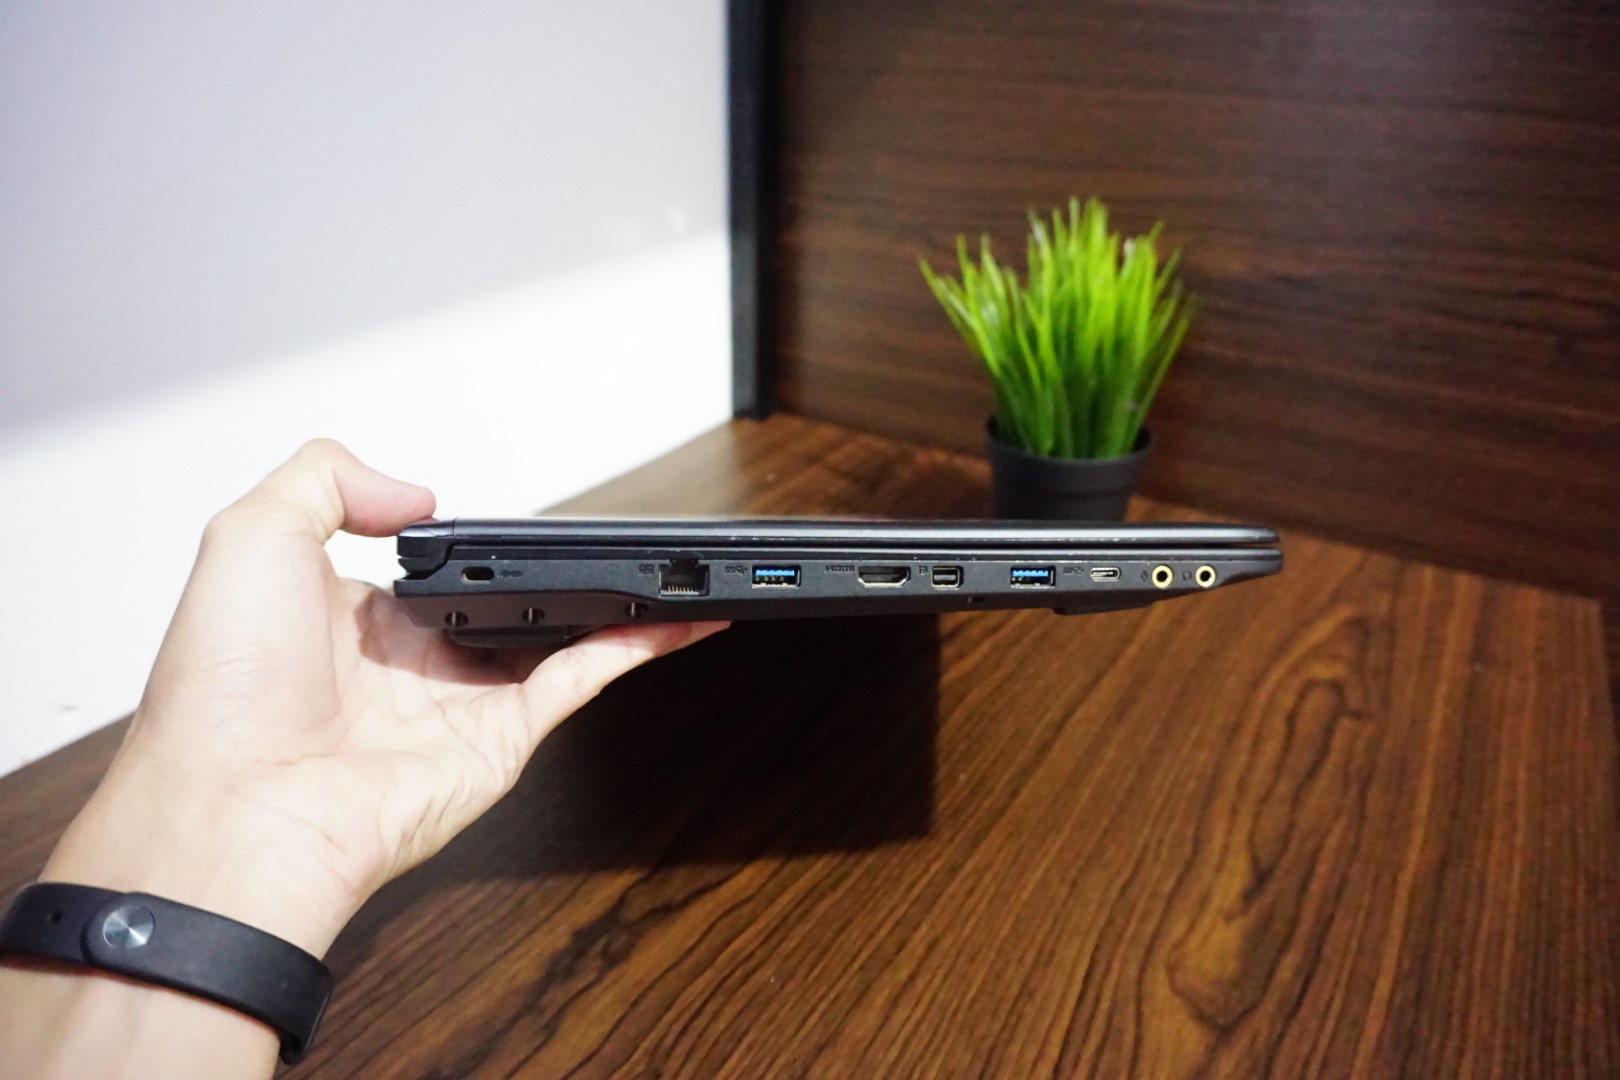 Laptop MSI GL62M 7RD Core i7 Black